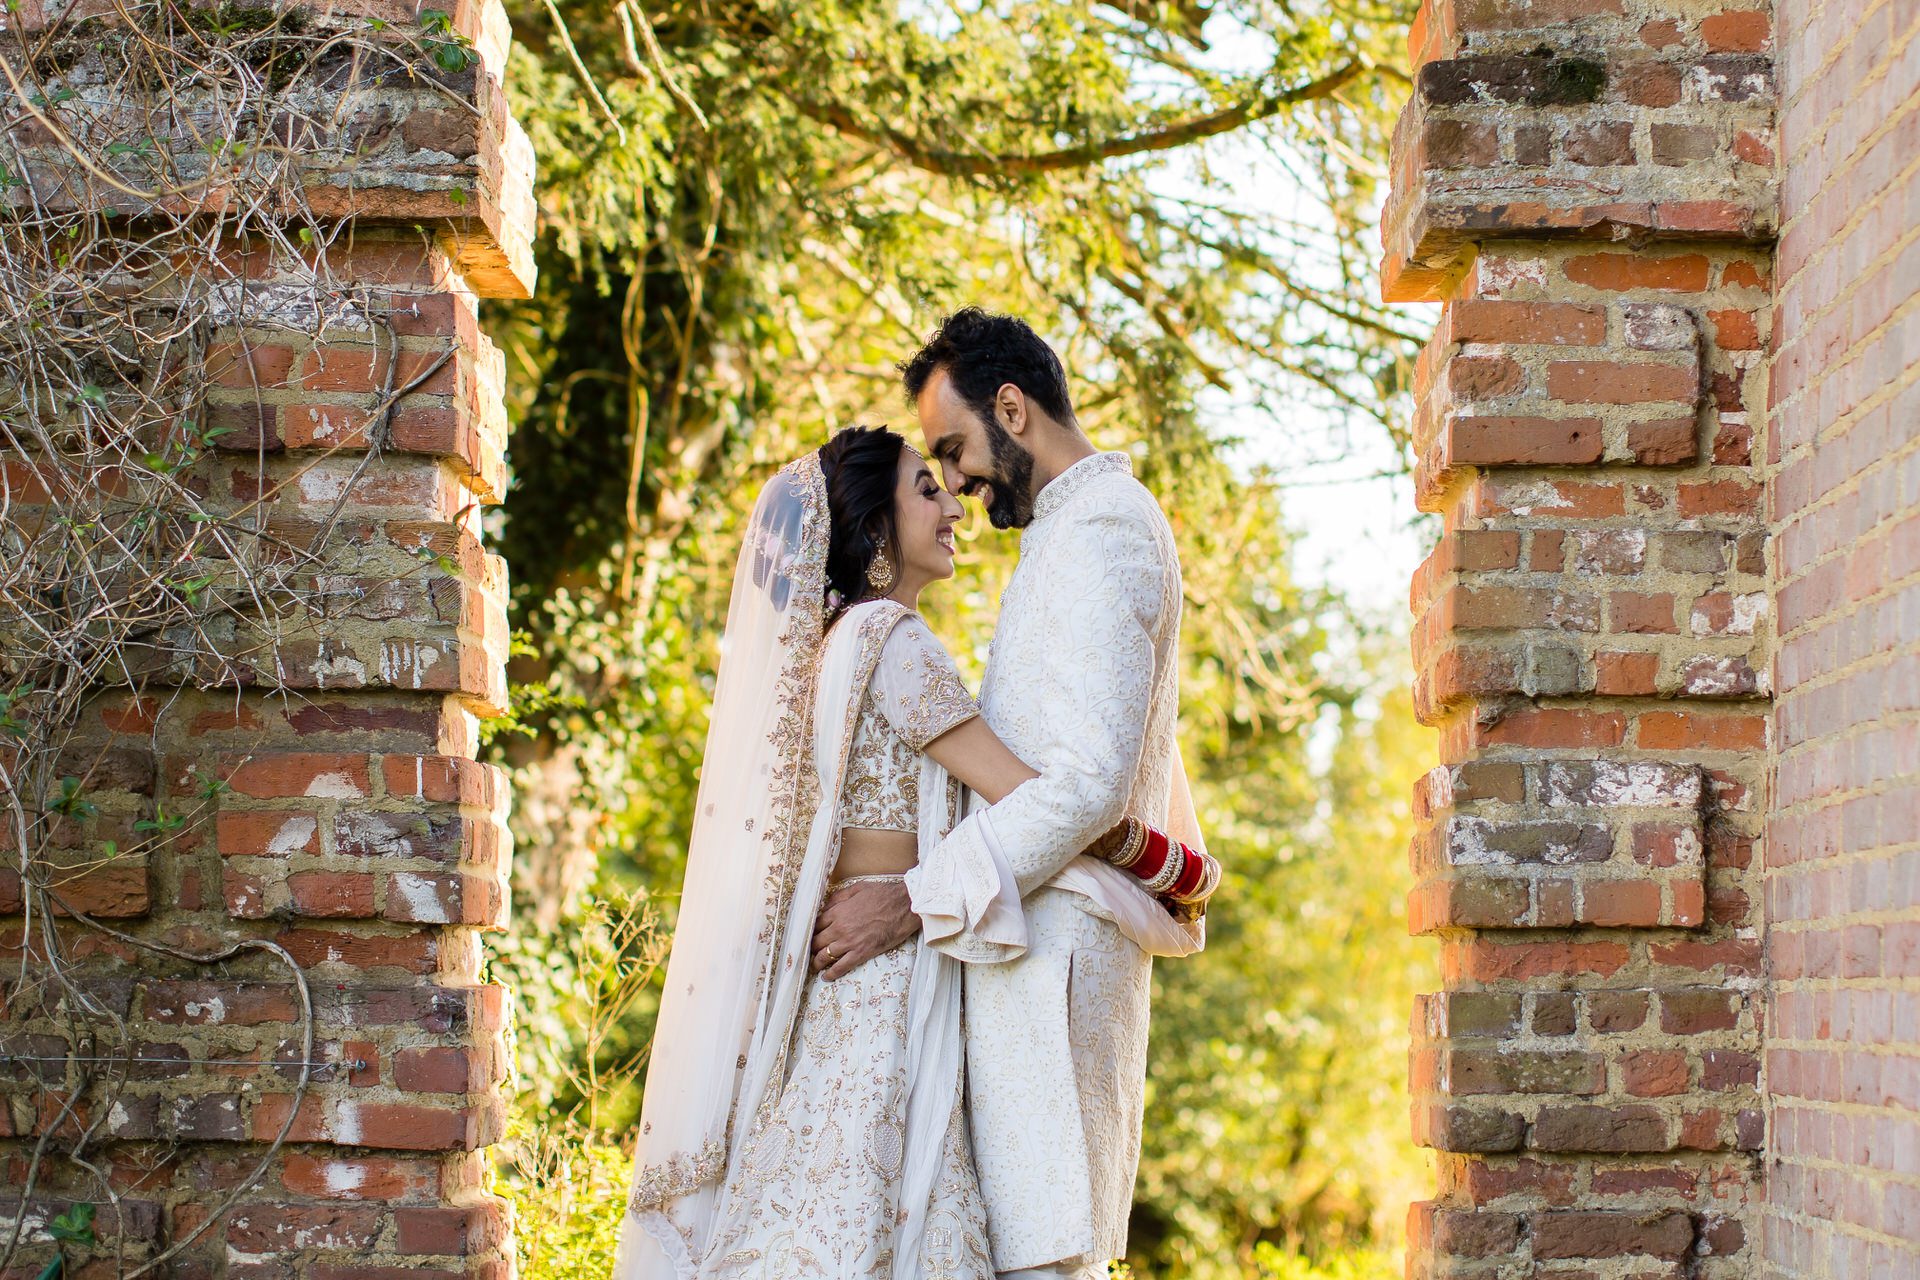 Priyanka and Ravi’s Hindu Wedding at Ditton Manor